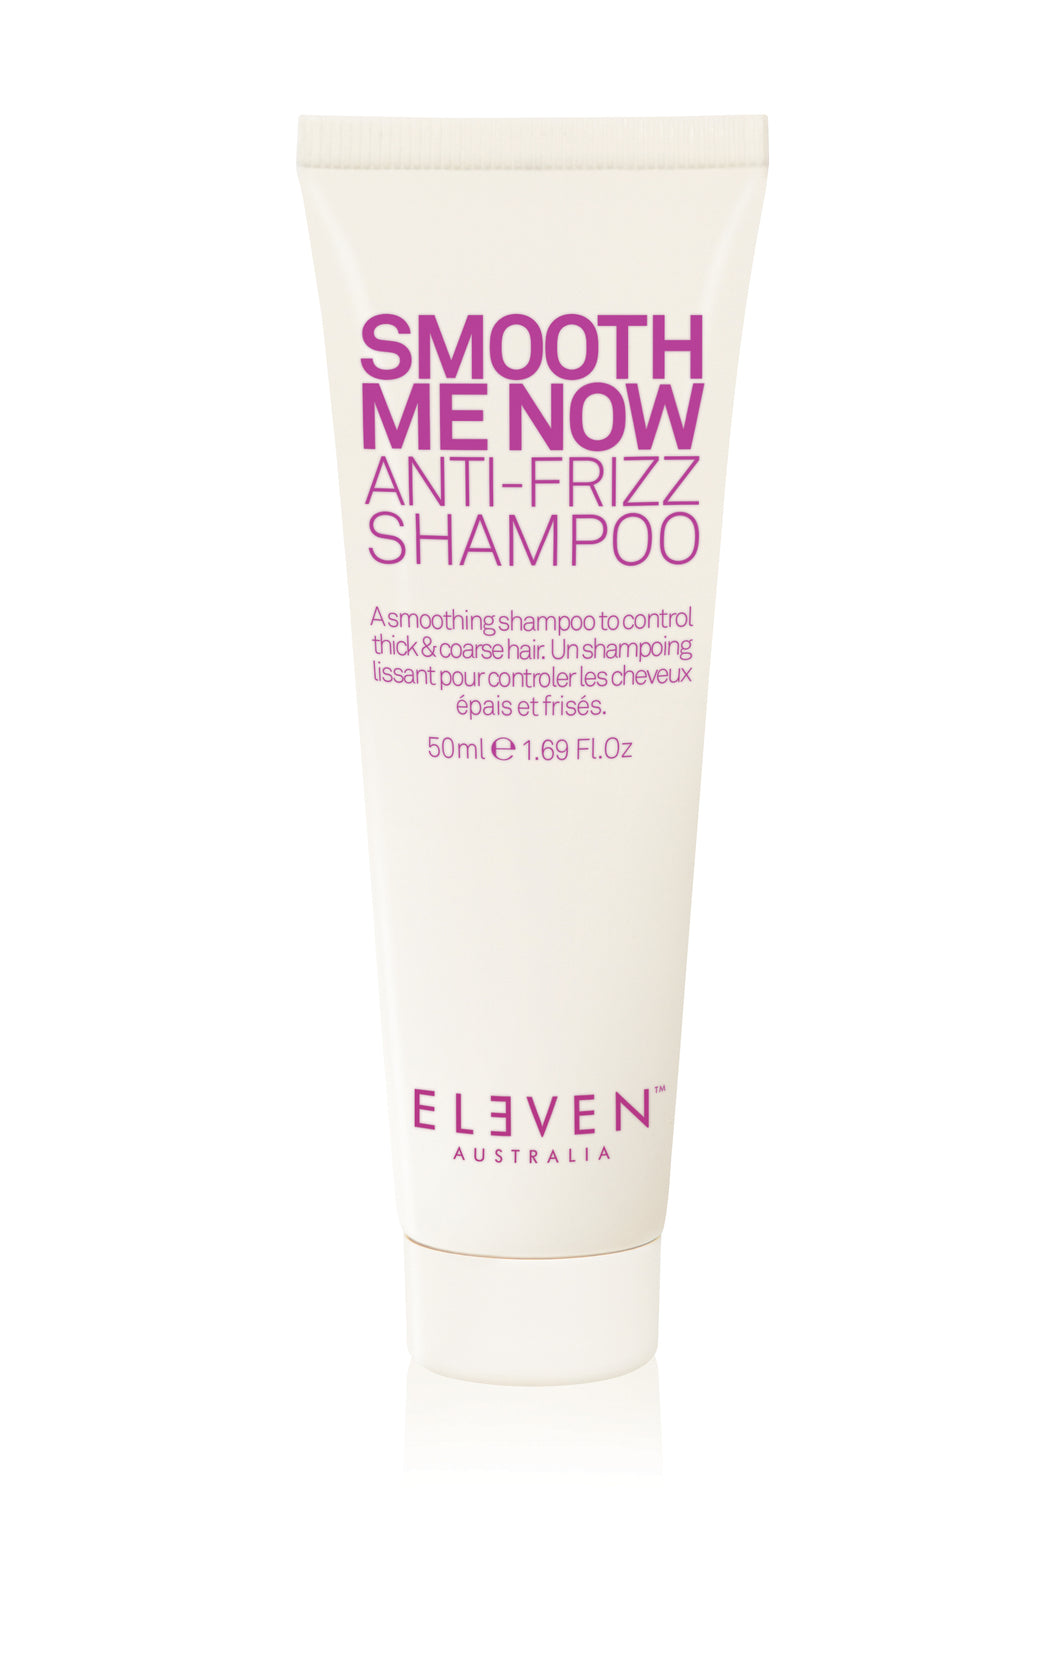 Smooth Me Now Anti-Frizz Shampoo 50ml